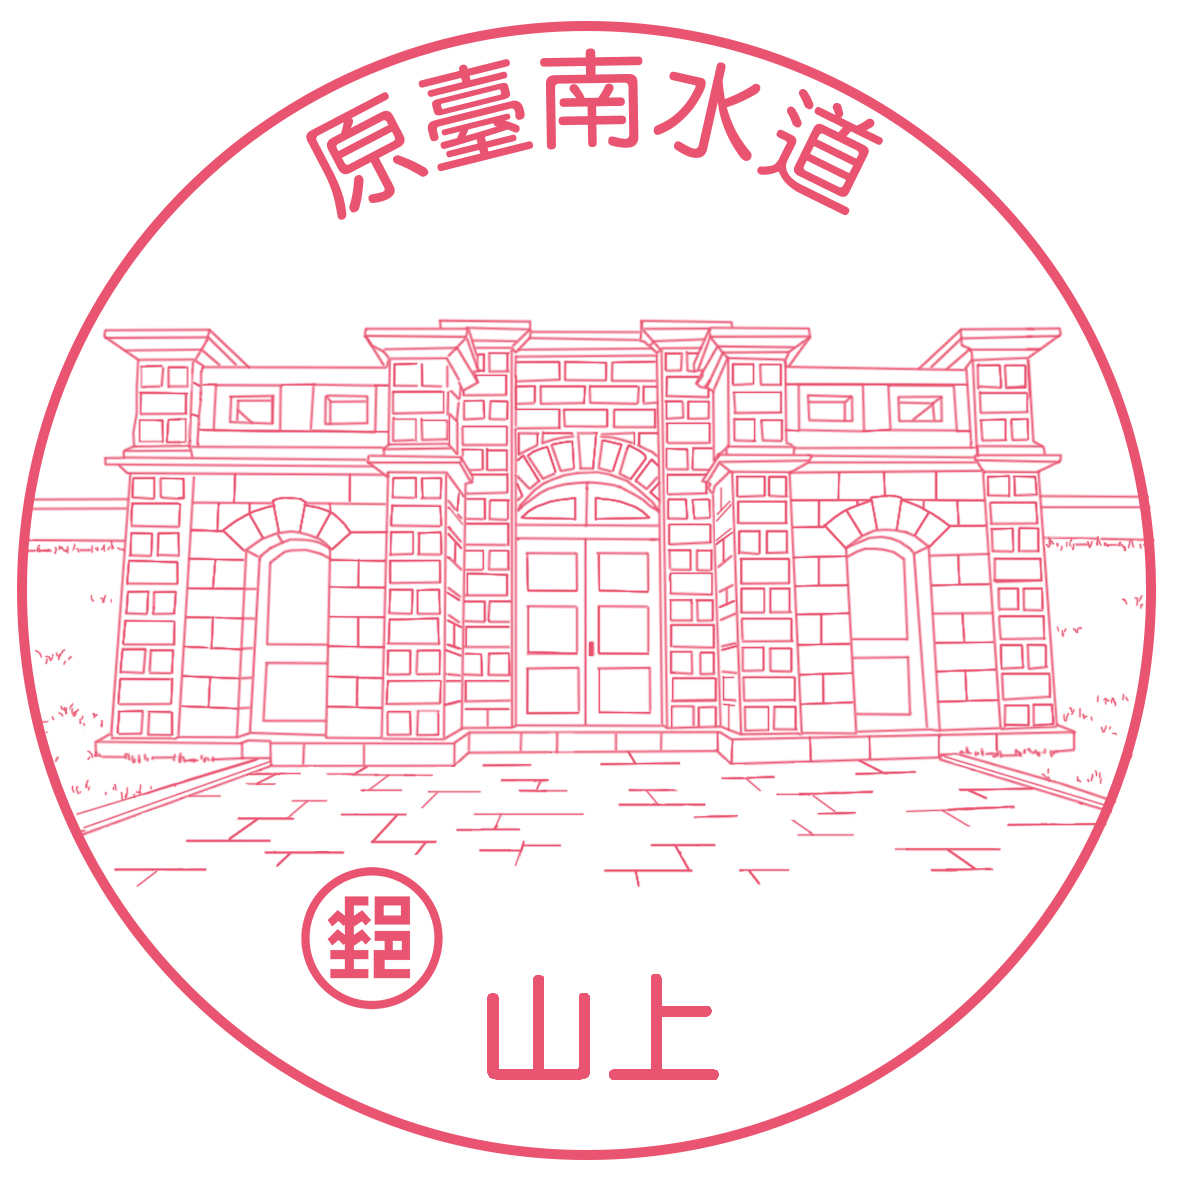 臺灣古蹟郵票(111年版)鐫刻風景郵戳